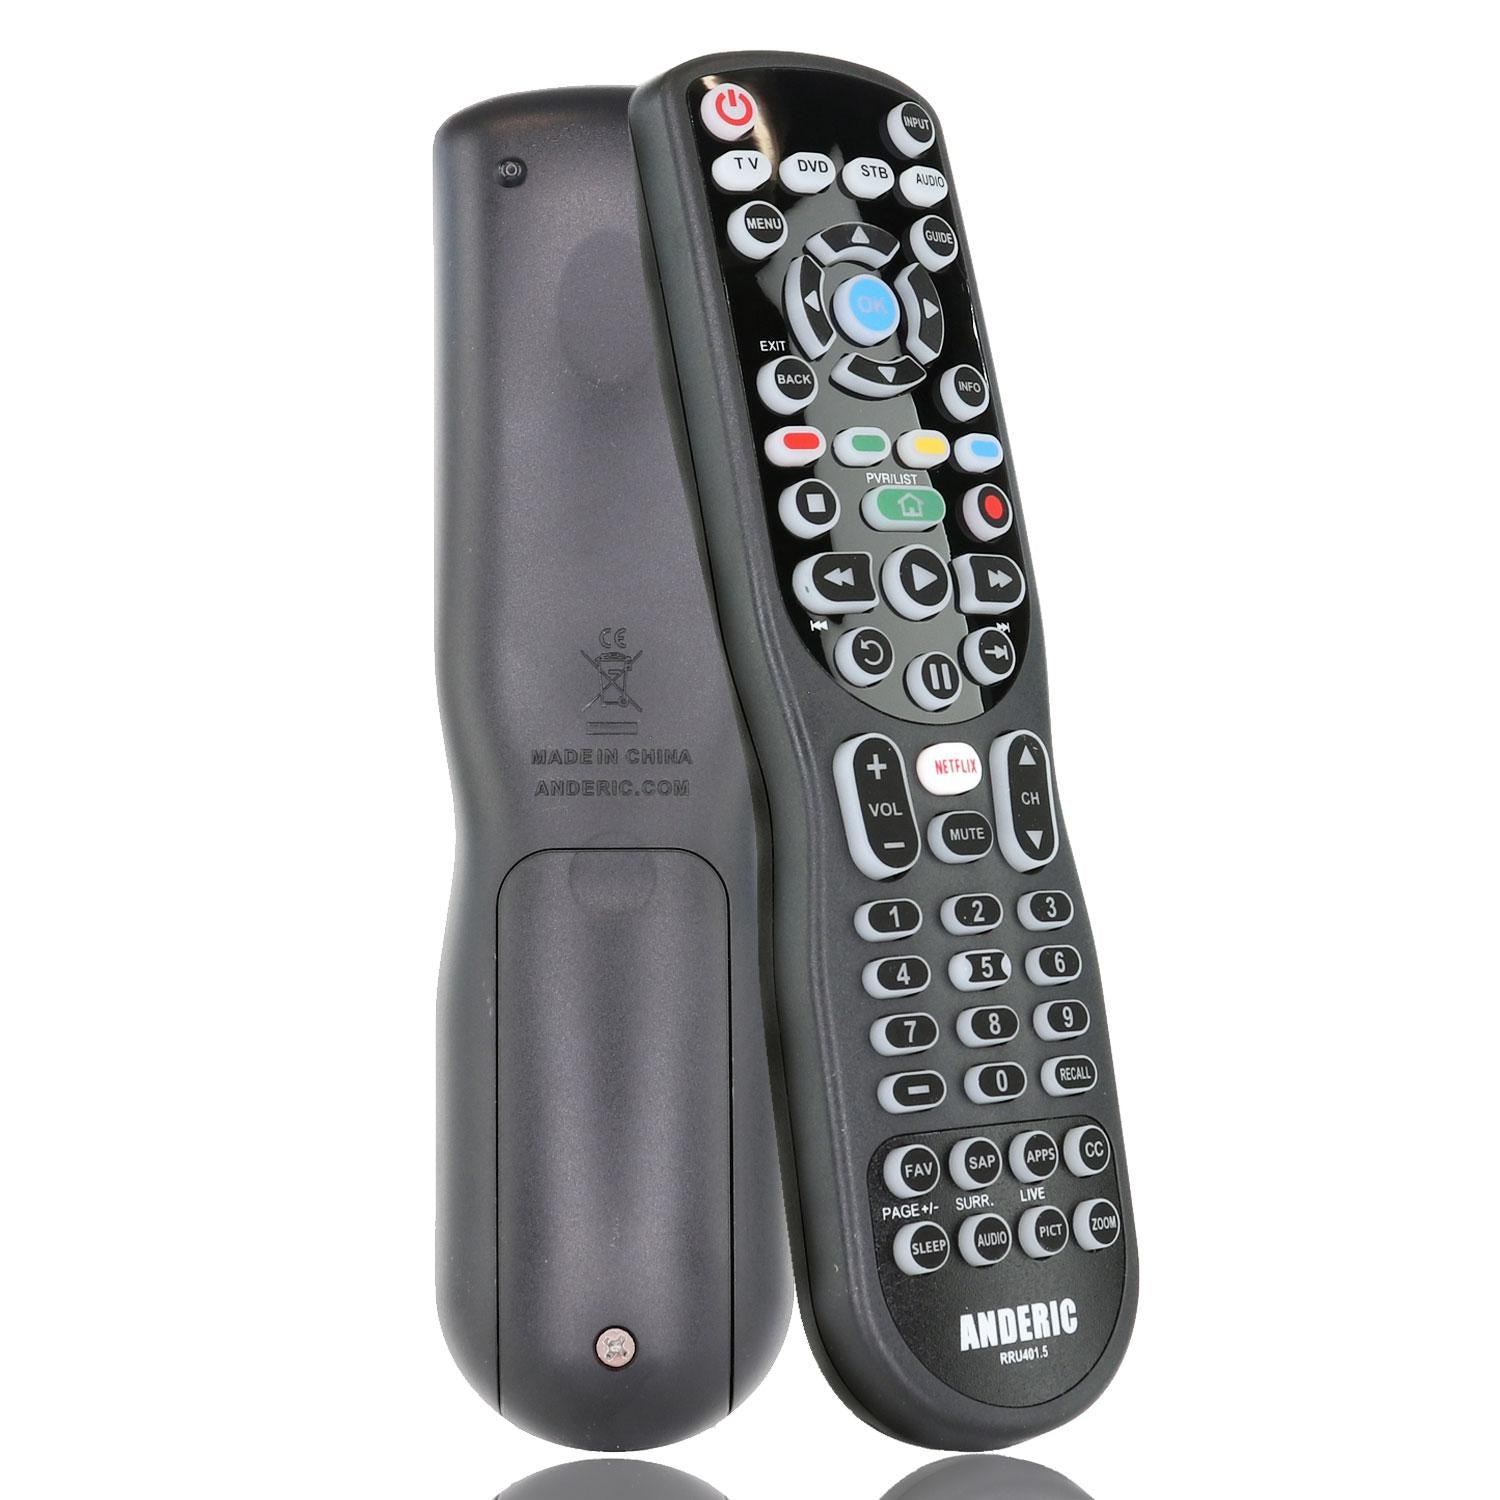 Telecommande rc5100 pour Televiseur Hitachi - Livraison rapide - 51,00€